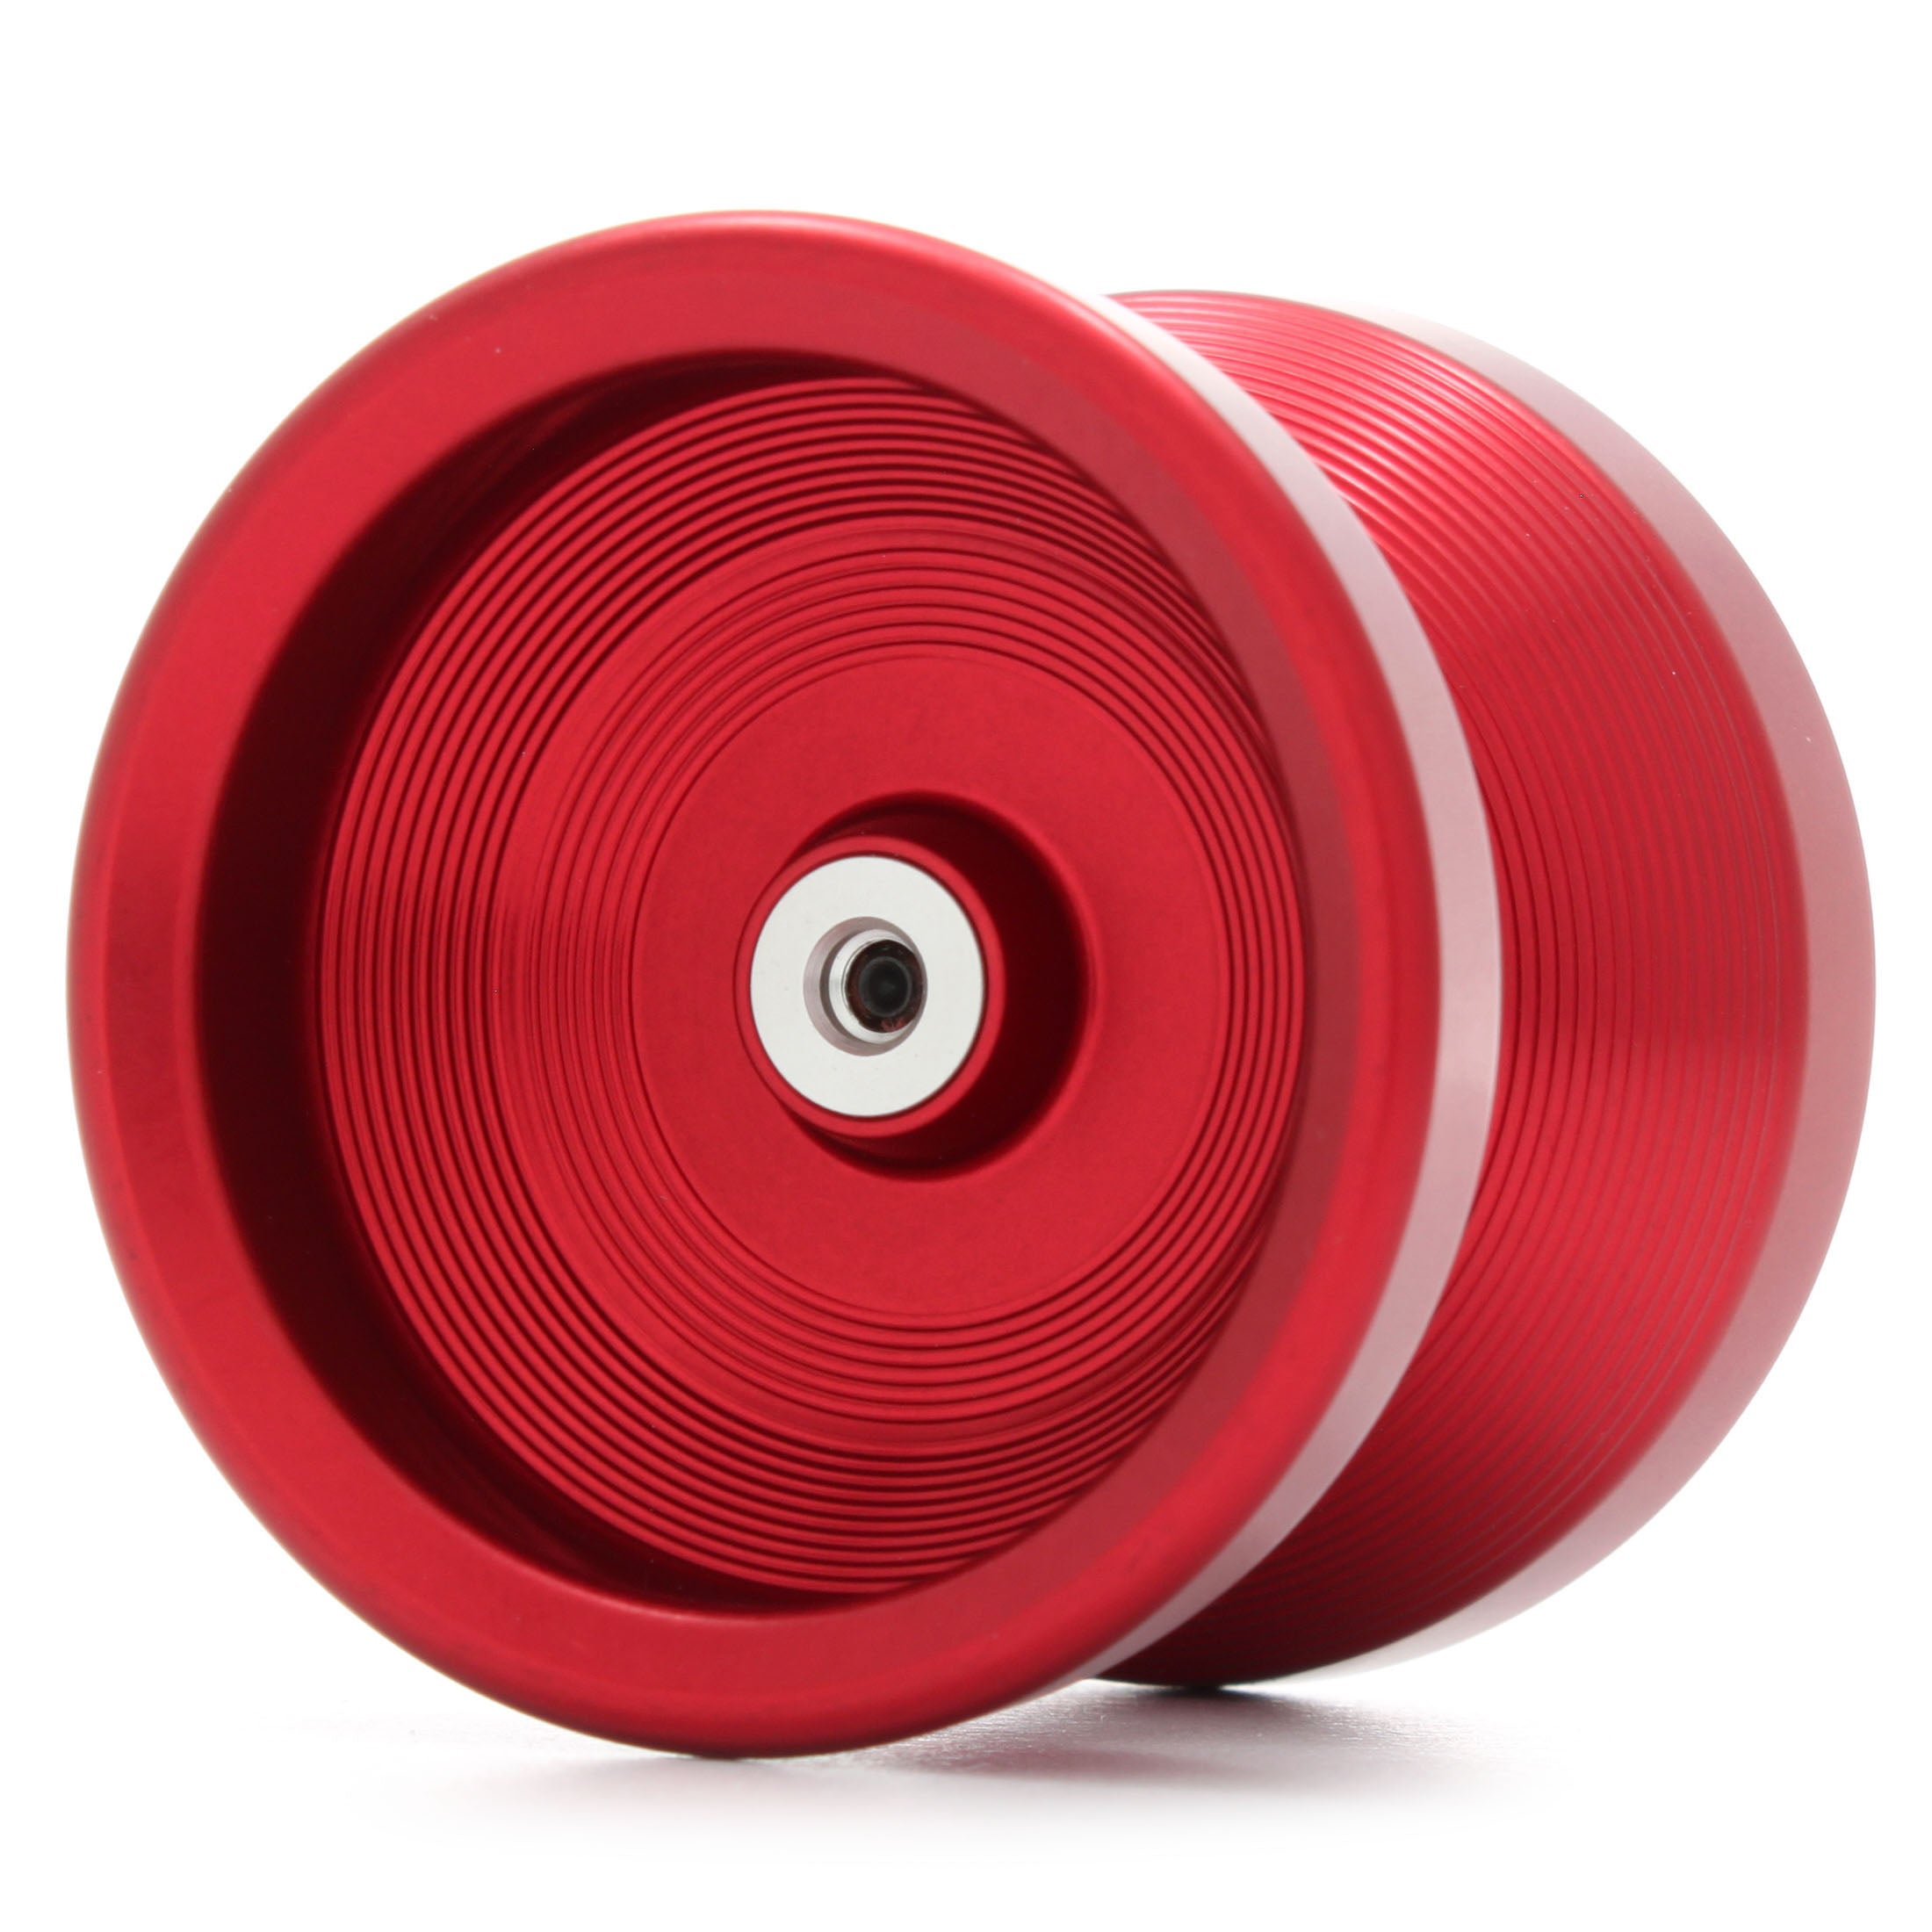 Reboot - One Drop | Yo-yo Specialty Store Rewind